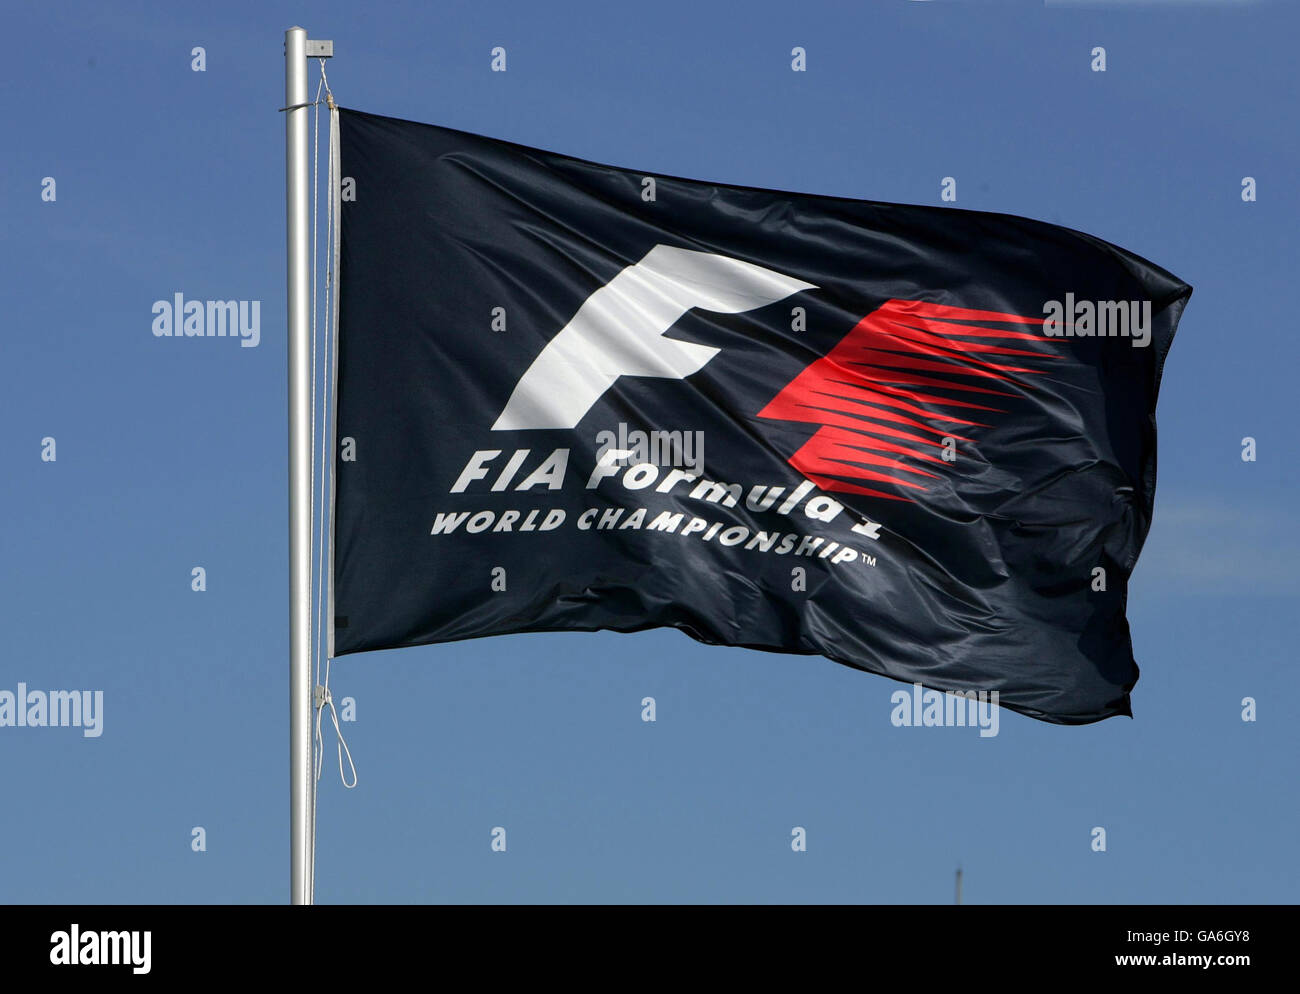 Formel-1-Motorsport - Großer Preis Von Europa - Nürburgring. Eine FIA Formel-1-WM-Flagge fliegt vor dem Grand Prix der Europäischen Formel 1 auf dem Nürburgring. Stockfoto